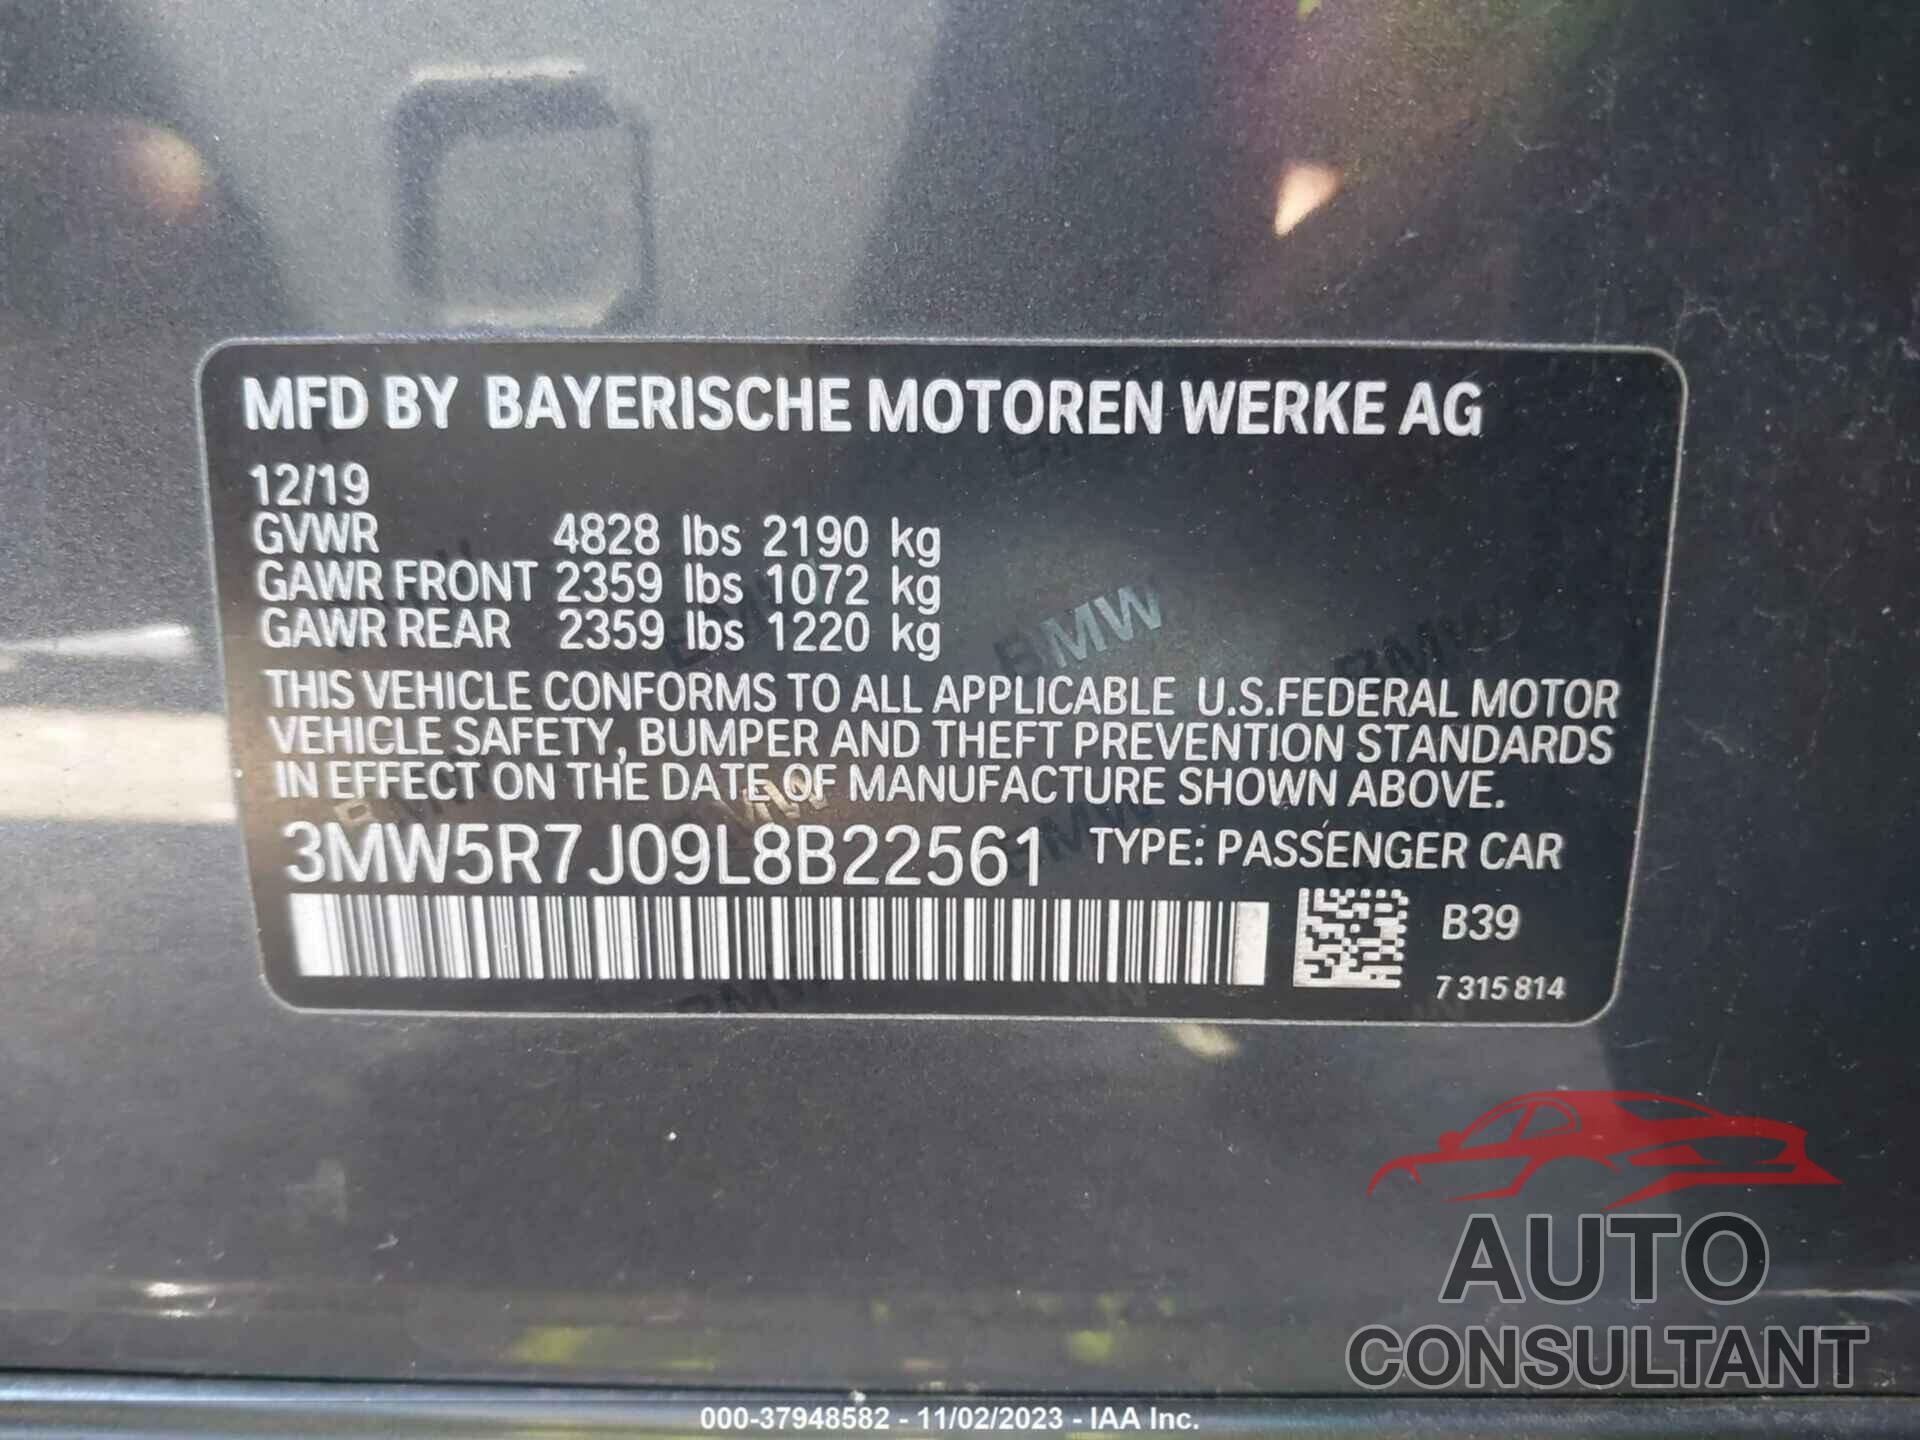 BMW 330XI 2020 - 3MW5R7J09L8B22561